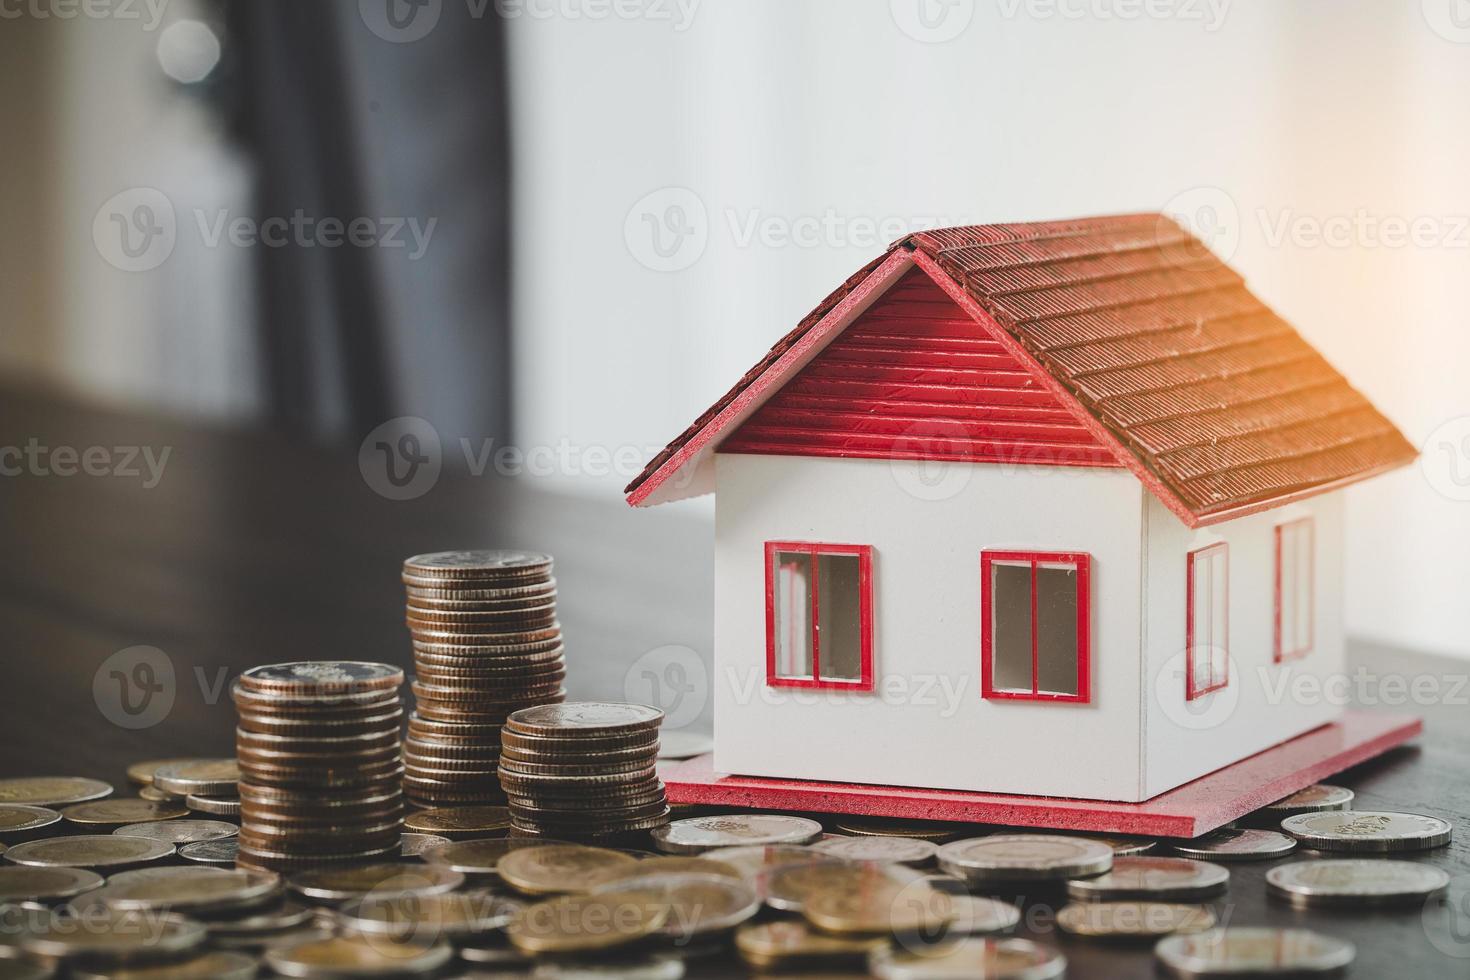 modèle de maison et piles de pièces d'argent sur fond de tableau flou. plans d'épargne pour la maison, le prêt, l'investissement, l'hypothèque, la finance et la banque sur le concept de maison. photo